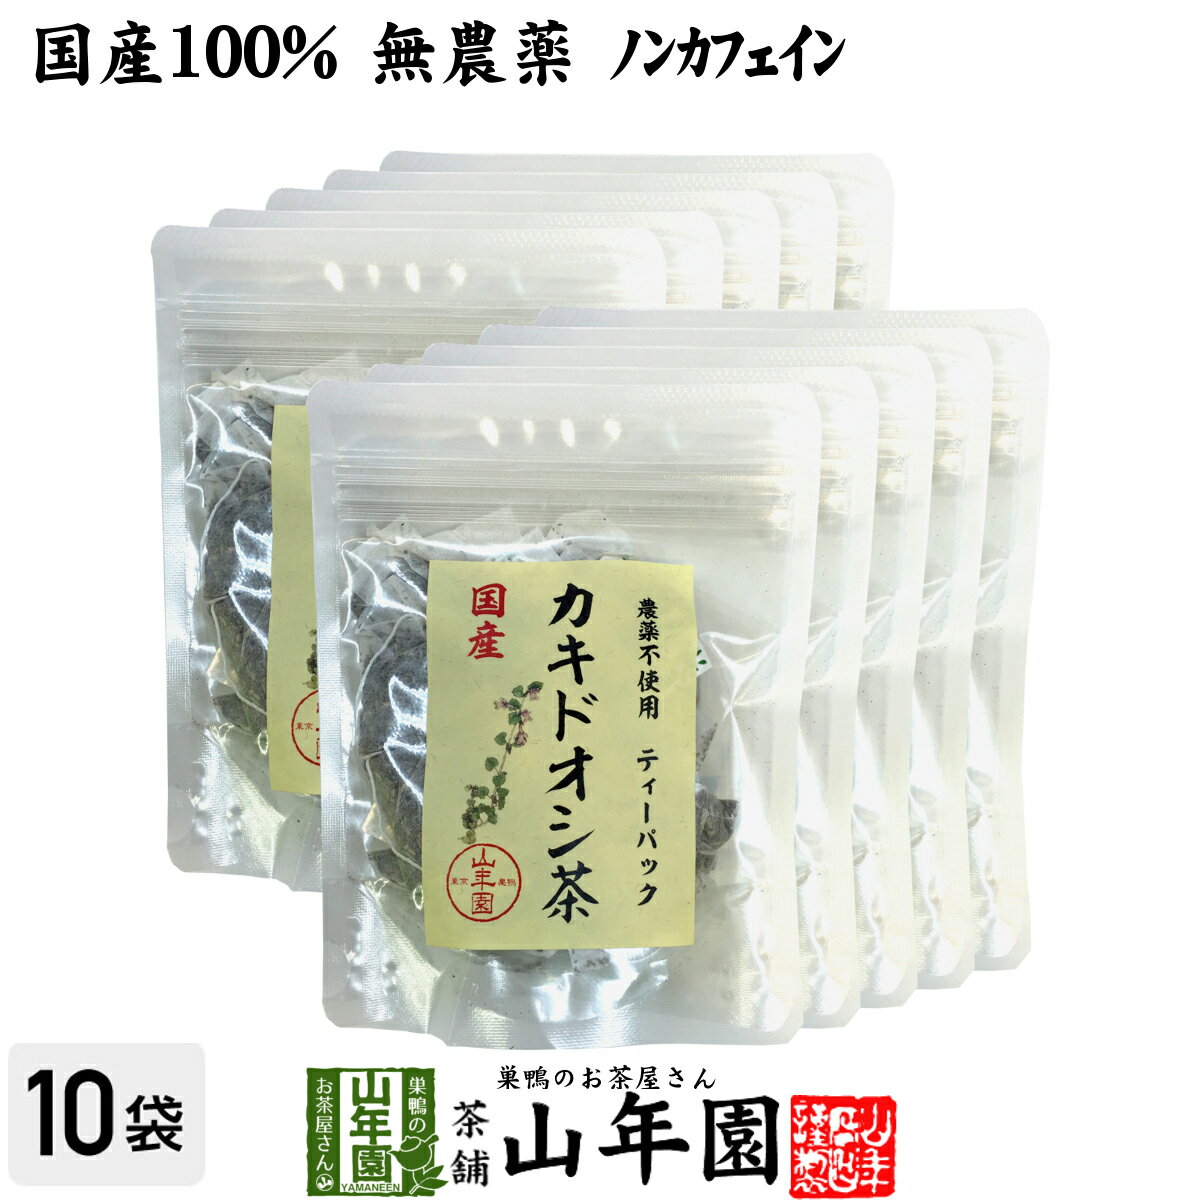 【国産 100%】カキドオシ茶 ティーパック 1.5g×20